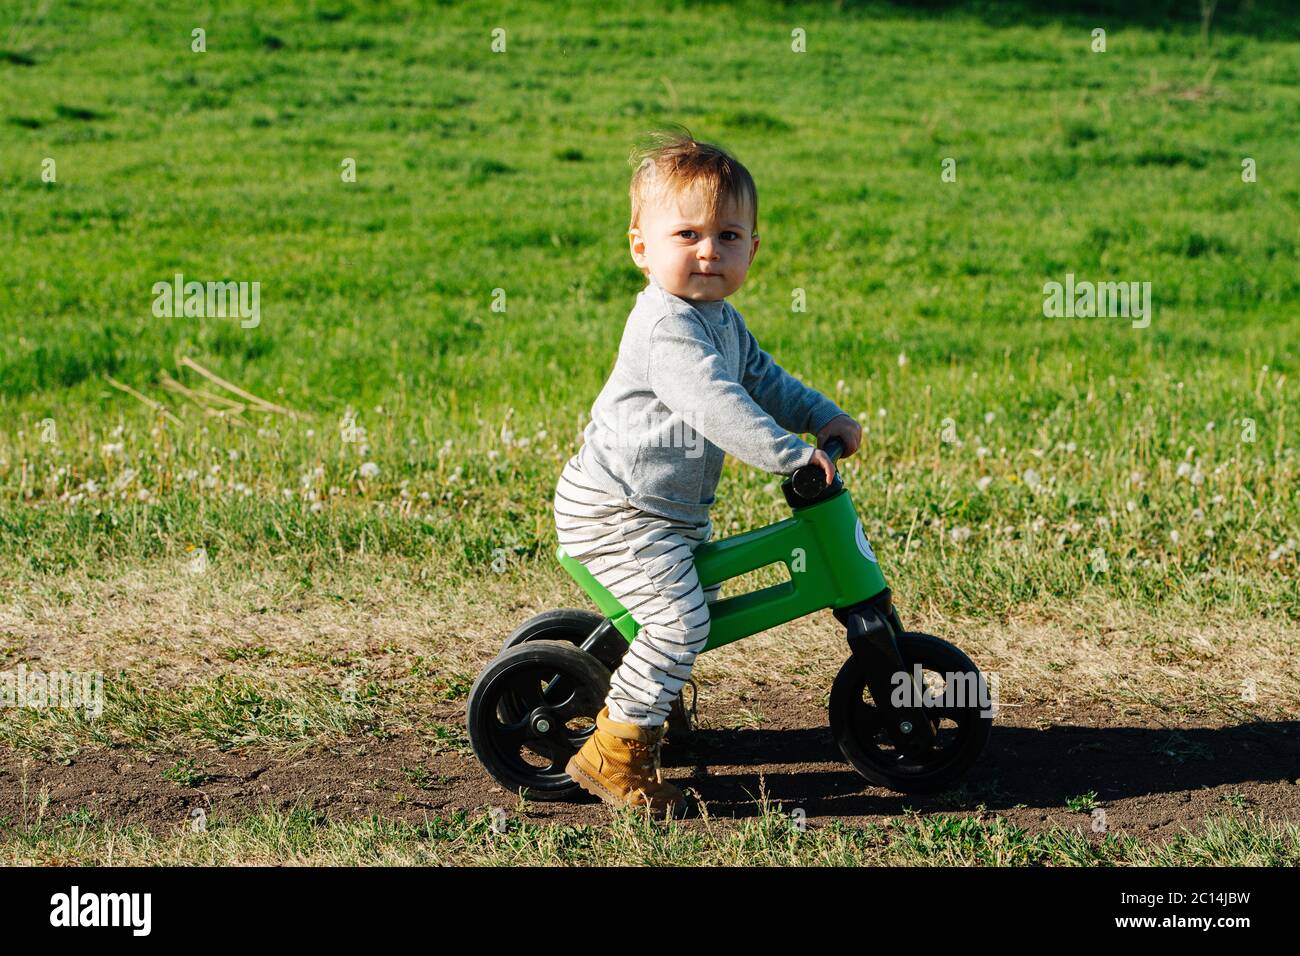 Un petit enfant grincheux sur un vélo à trois roues. Il regarde la caméra. Banque D'Images